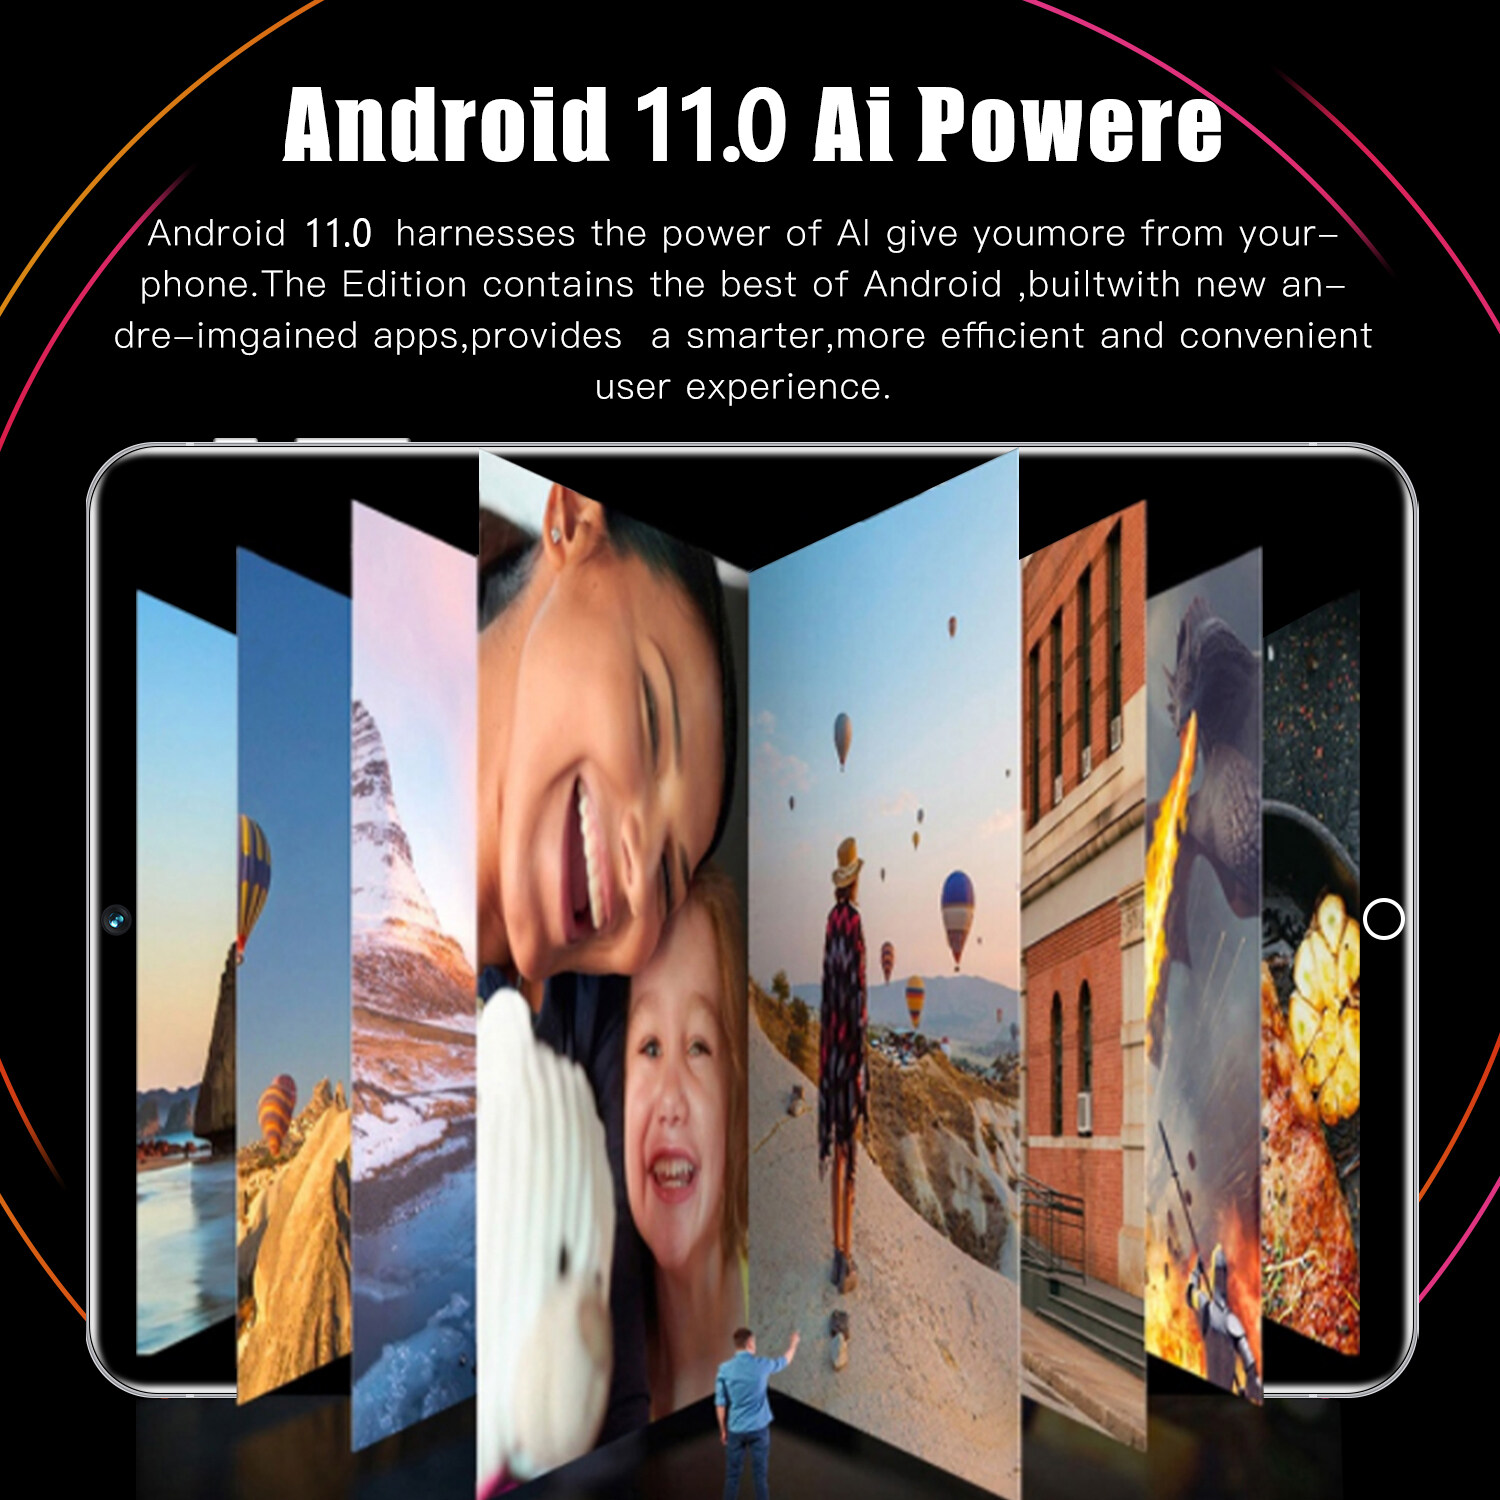 ข้อมูลเกี่ยวกับ 【รับประกัน 1 ปี】ของแท้ Sansumg 12 Pro 11.6 นิ้ว แท็บเล็ต Tablet RAM16G+ROM512G 24+48MP Full HD แท็บเล็ตพีซี Android12.0 แท็บเล็ต WIFI 4G/5G หน่วยประมวลผล แท็บเล็ตของแท้ 10-core หน้าจอ ไอเเพ็ด แท็บเล็ตราคาถูก ส่งฟรี ipad ไอแพด แท็บเล็ตของแท้ 11pro